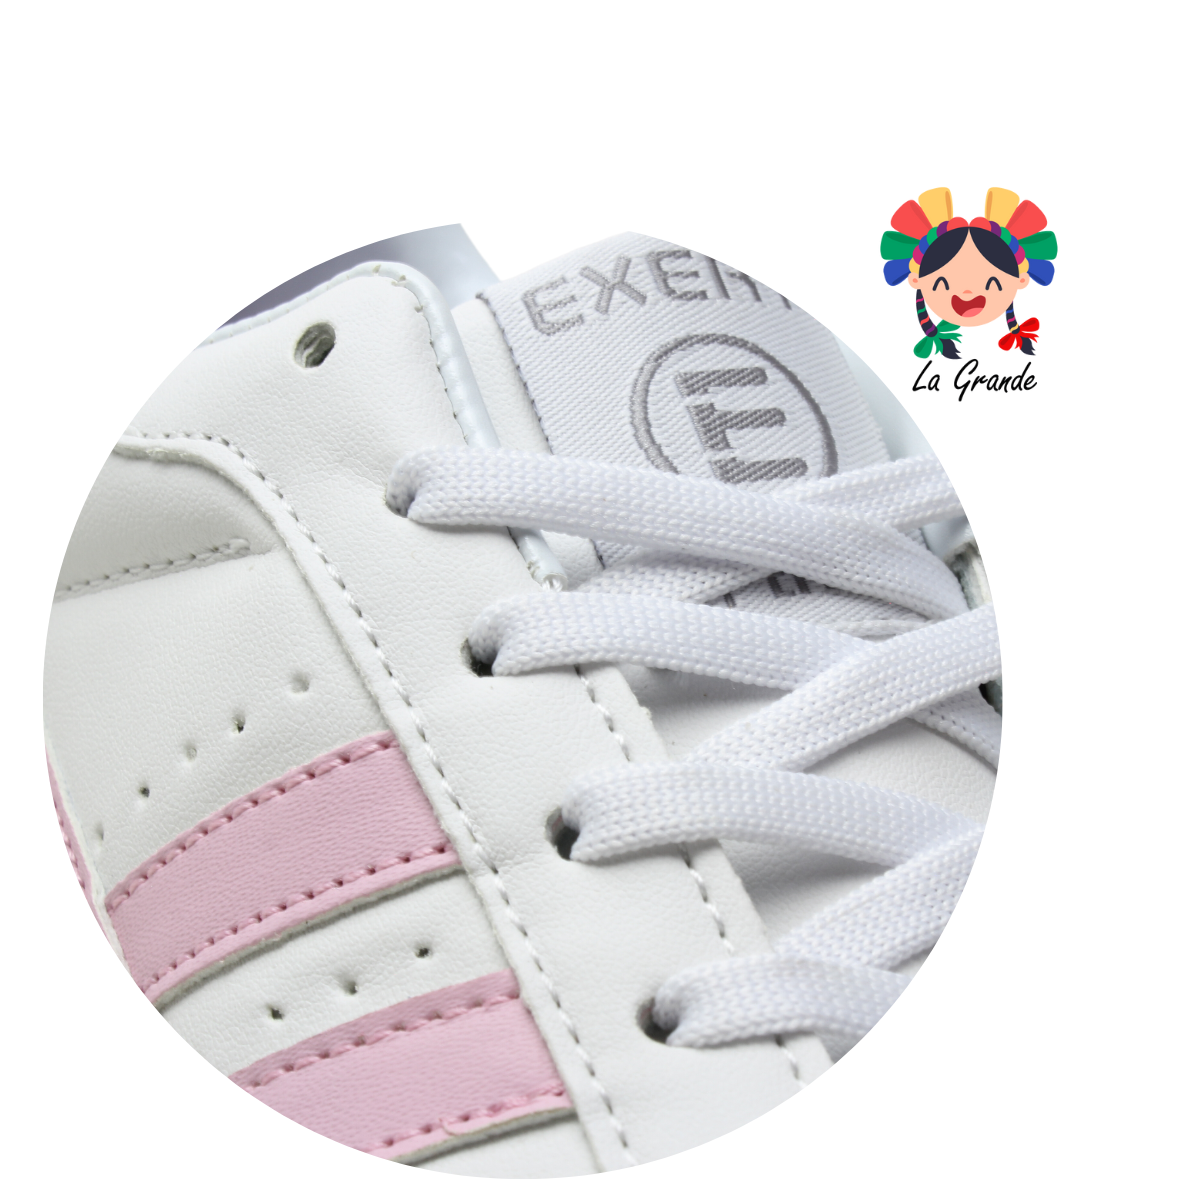 740 EFFORT blanco con rosa tenis escolar infantil para niña y dama